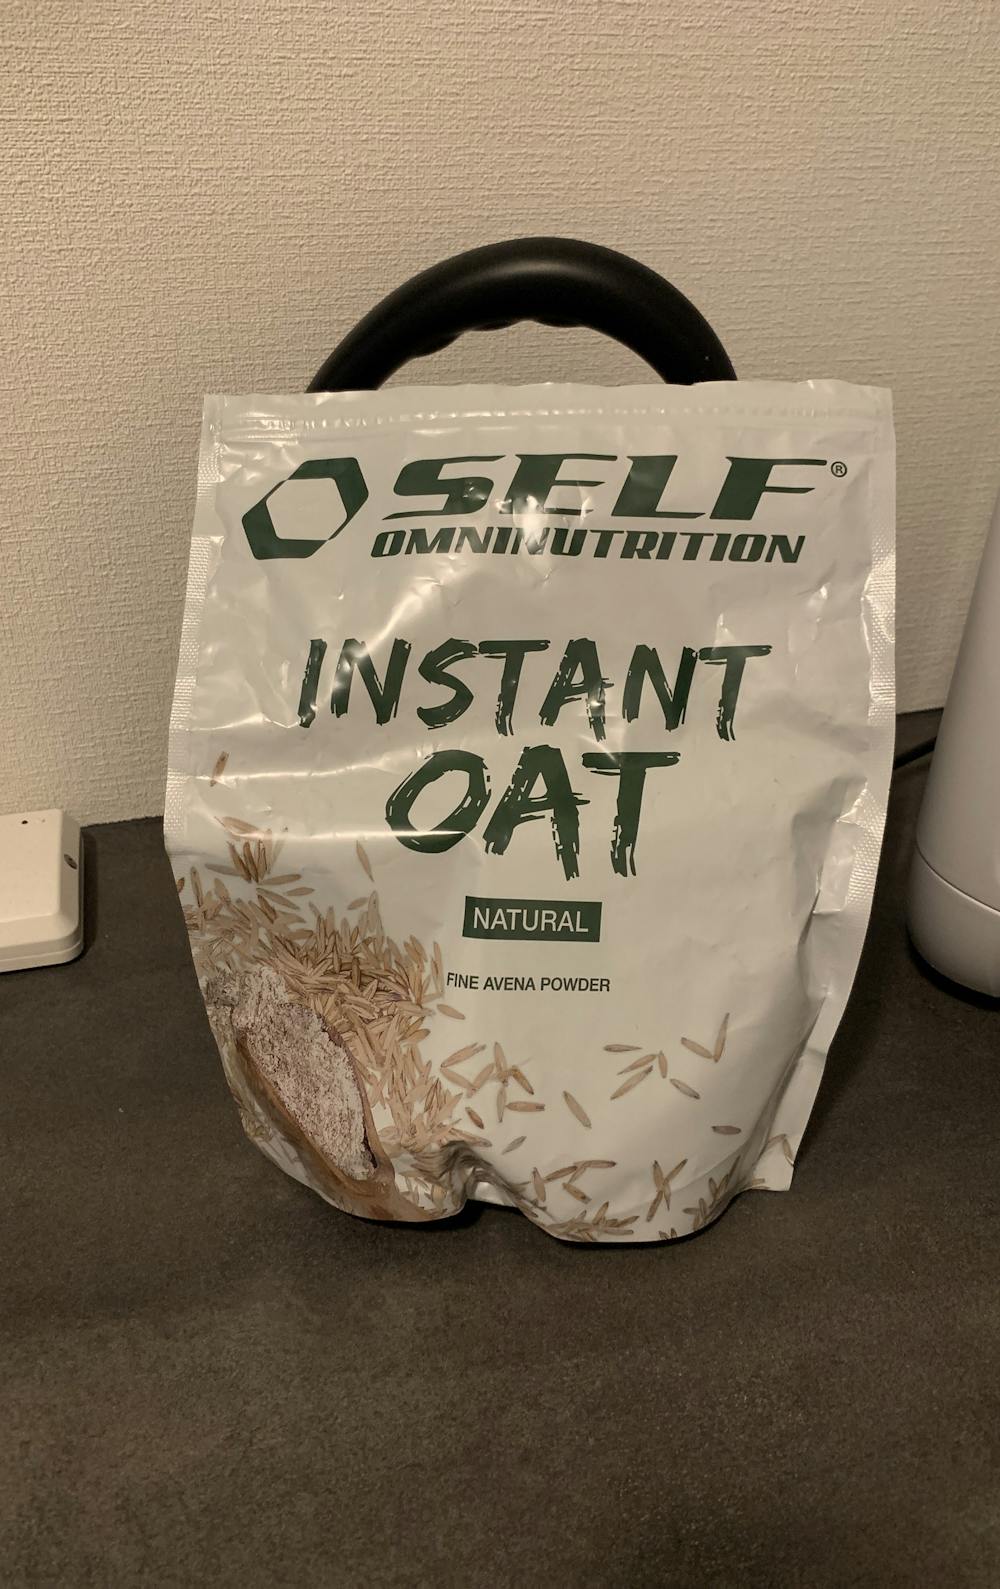 Instant oat, Self omnutrition